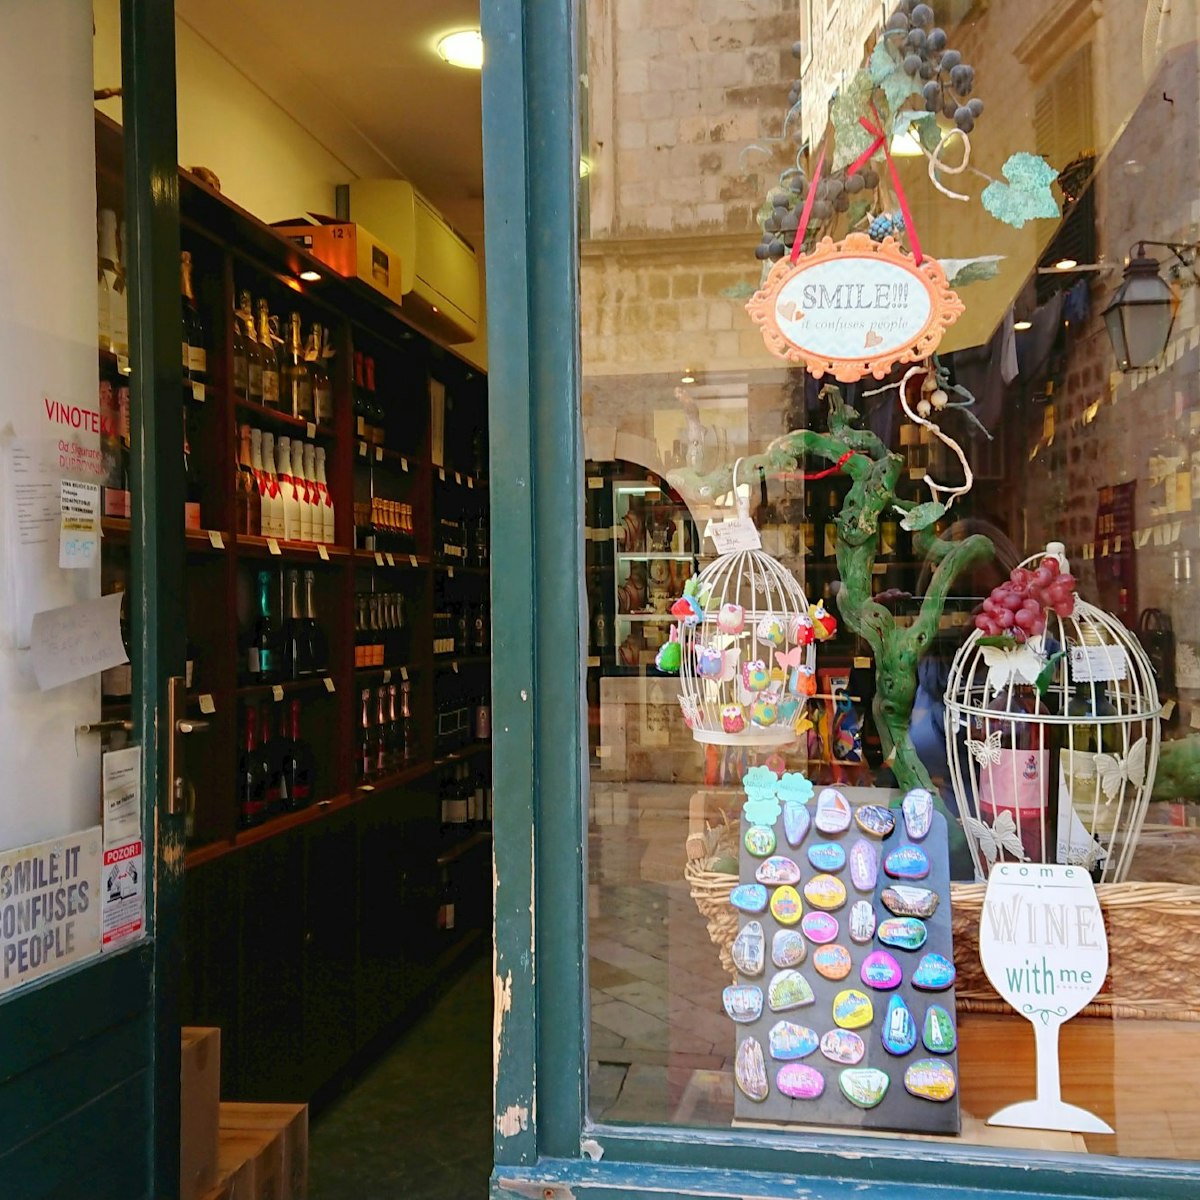 Entrance to Vina Miličić wine shop